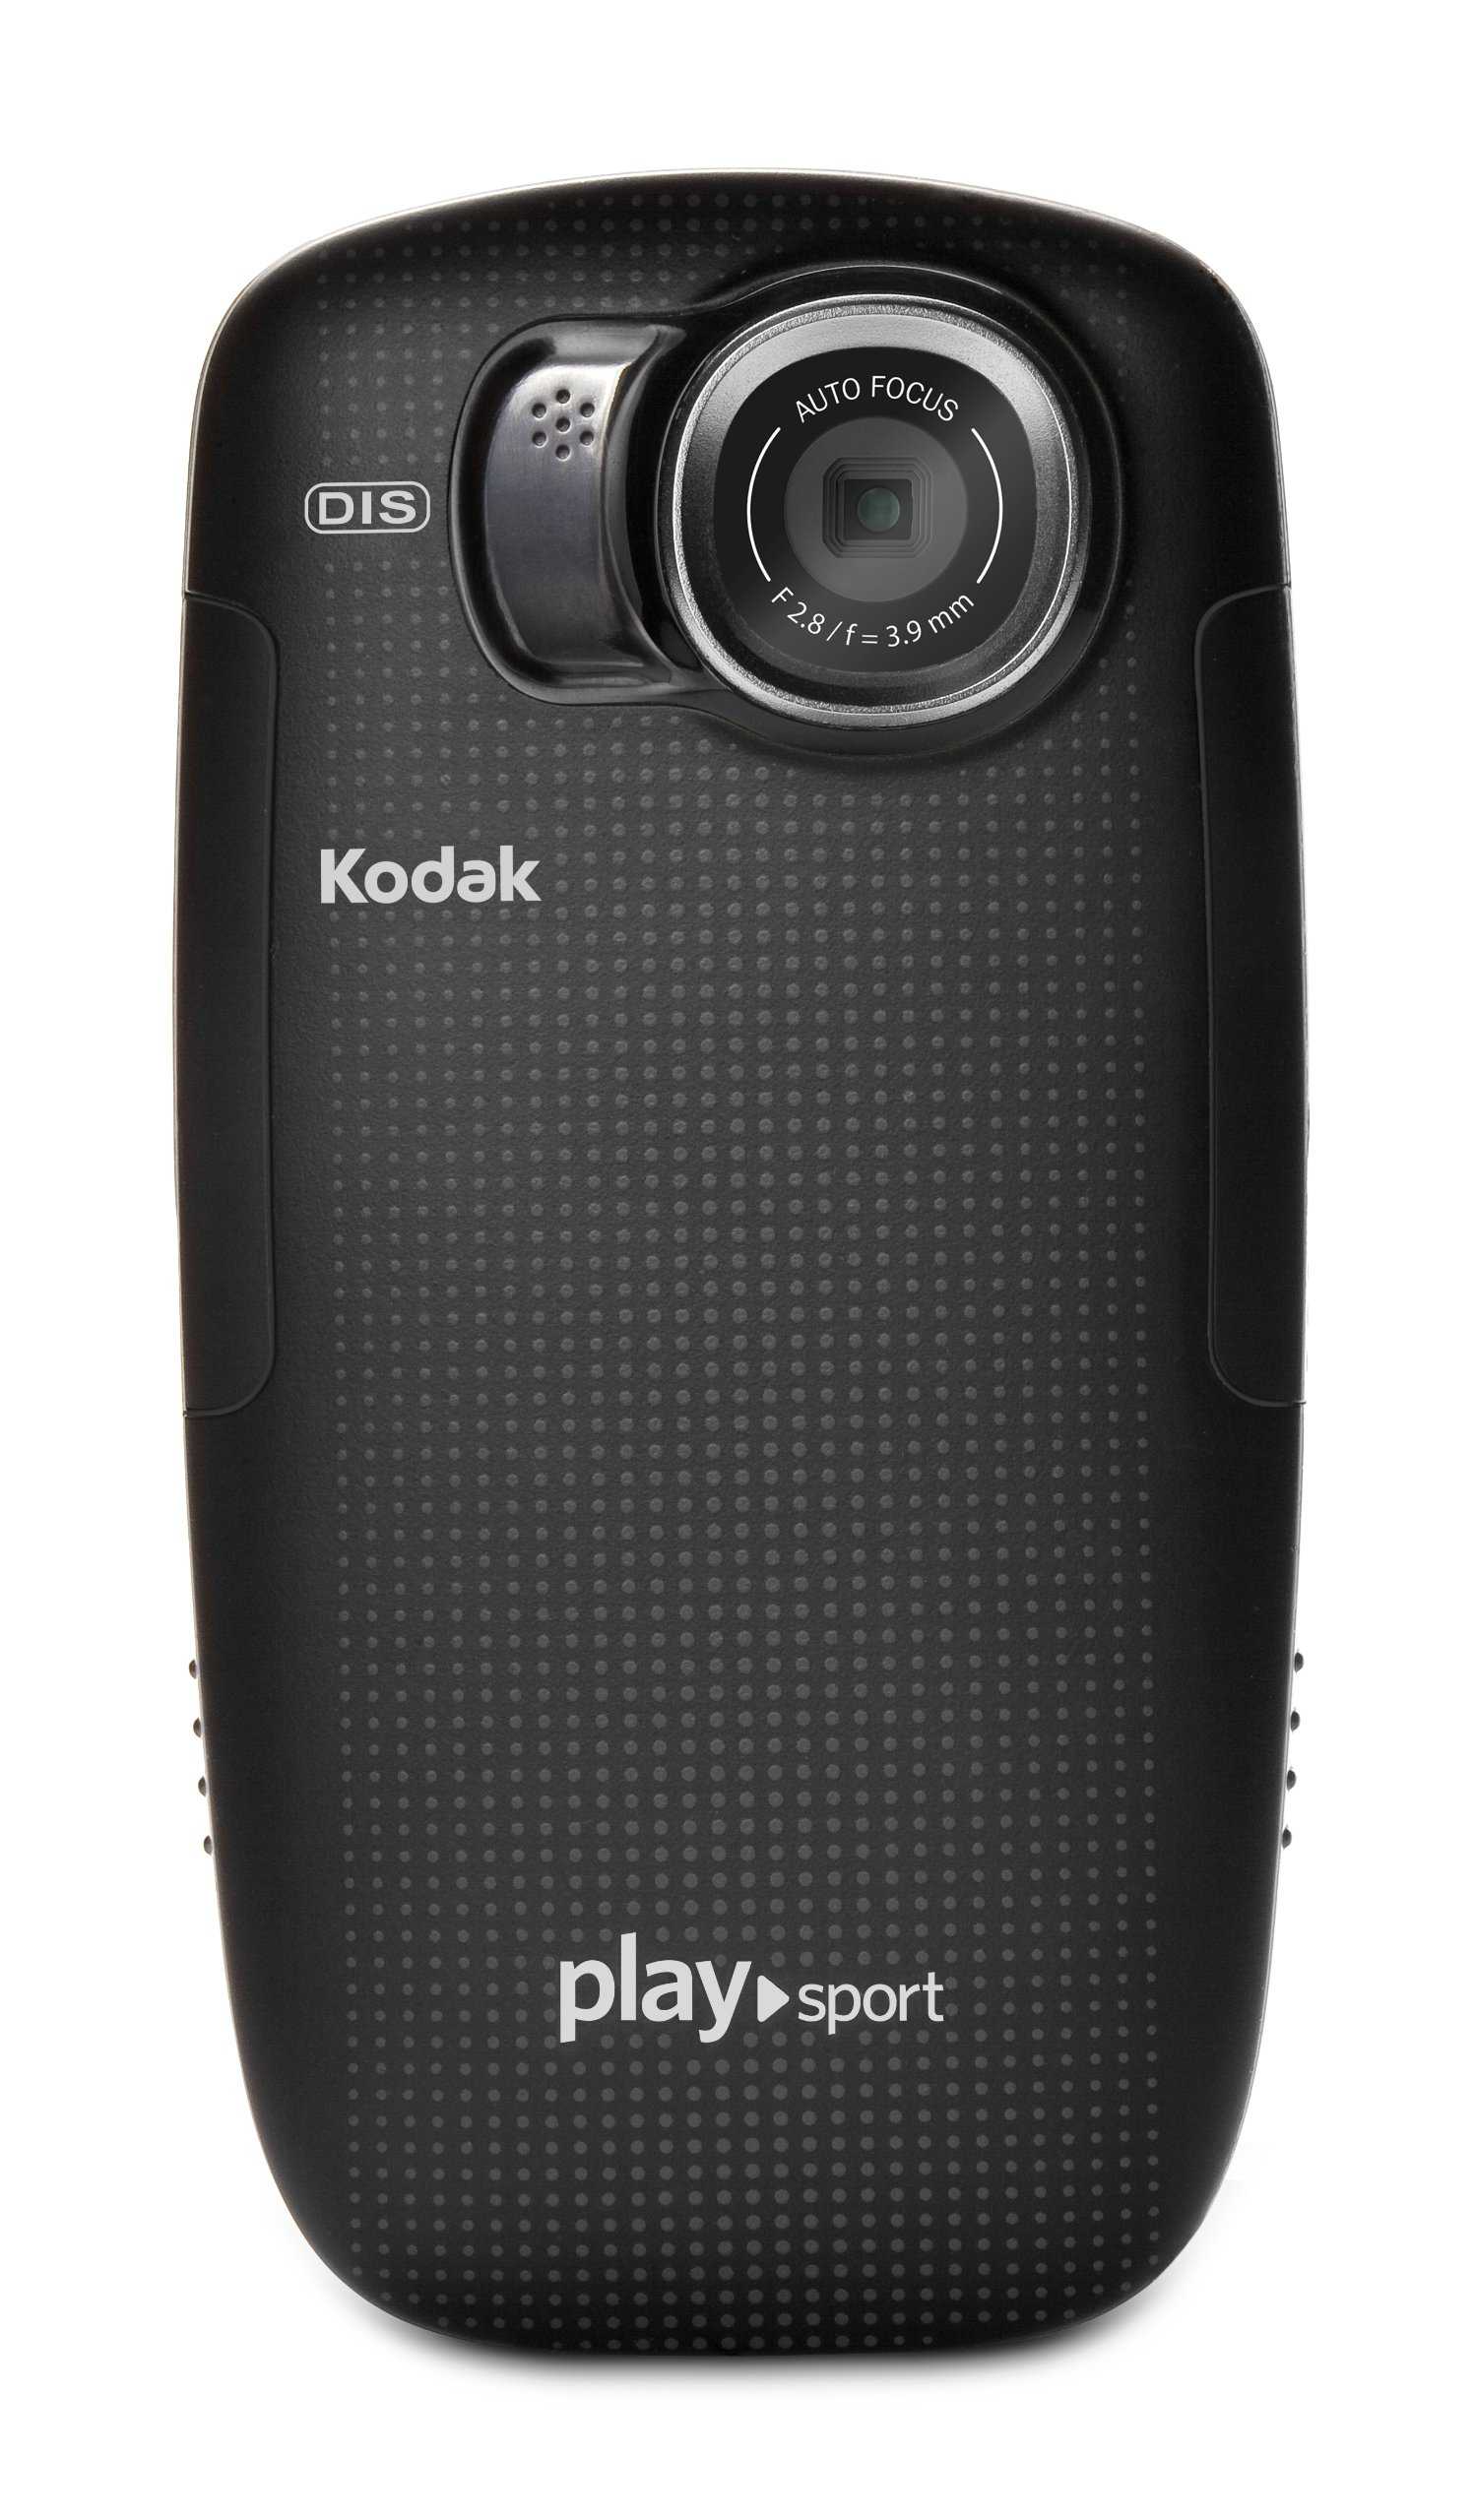 Видеокамера Kodak Zx5 - подробные характеристики обзоры видео фото Цены в интернет-магазинах где можно купить видеокамеру Kodak Zx5